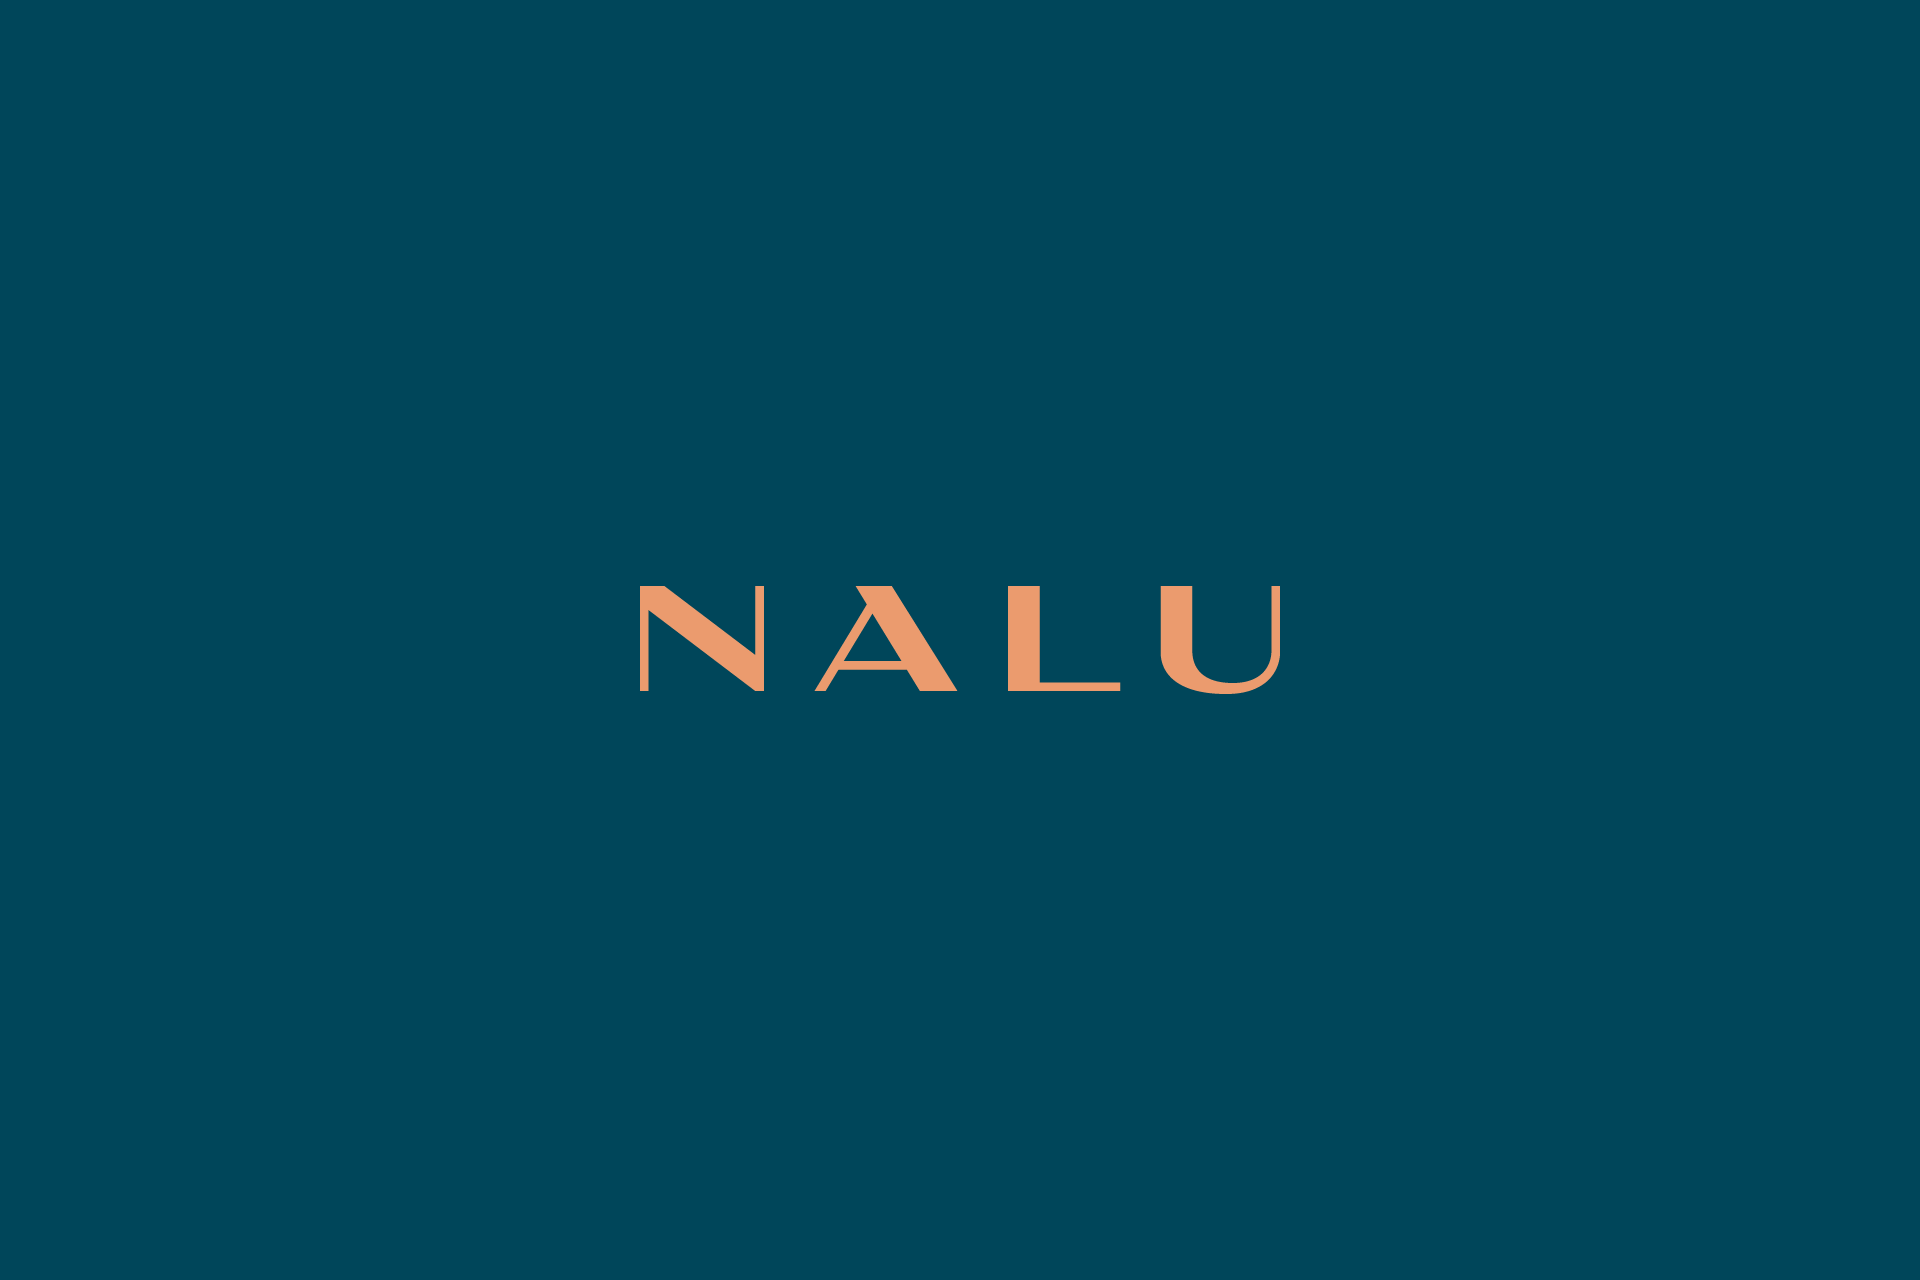 nalu-logo-01_1